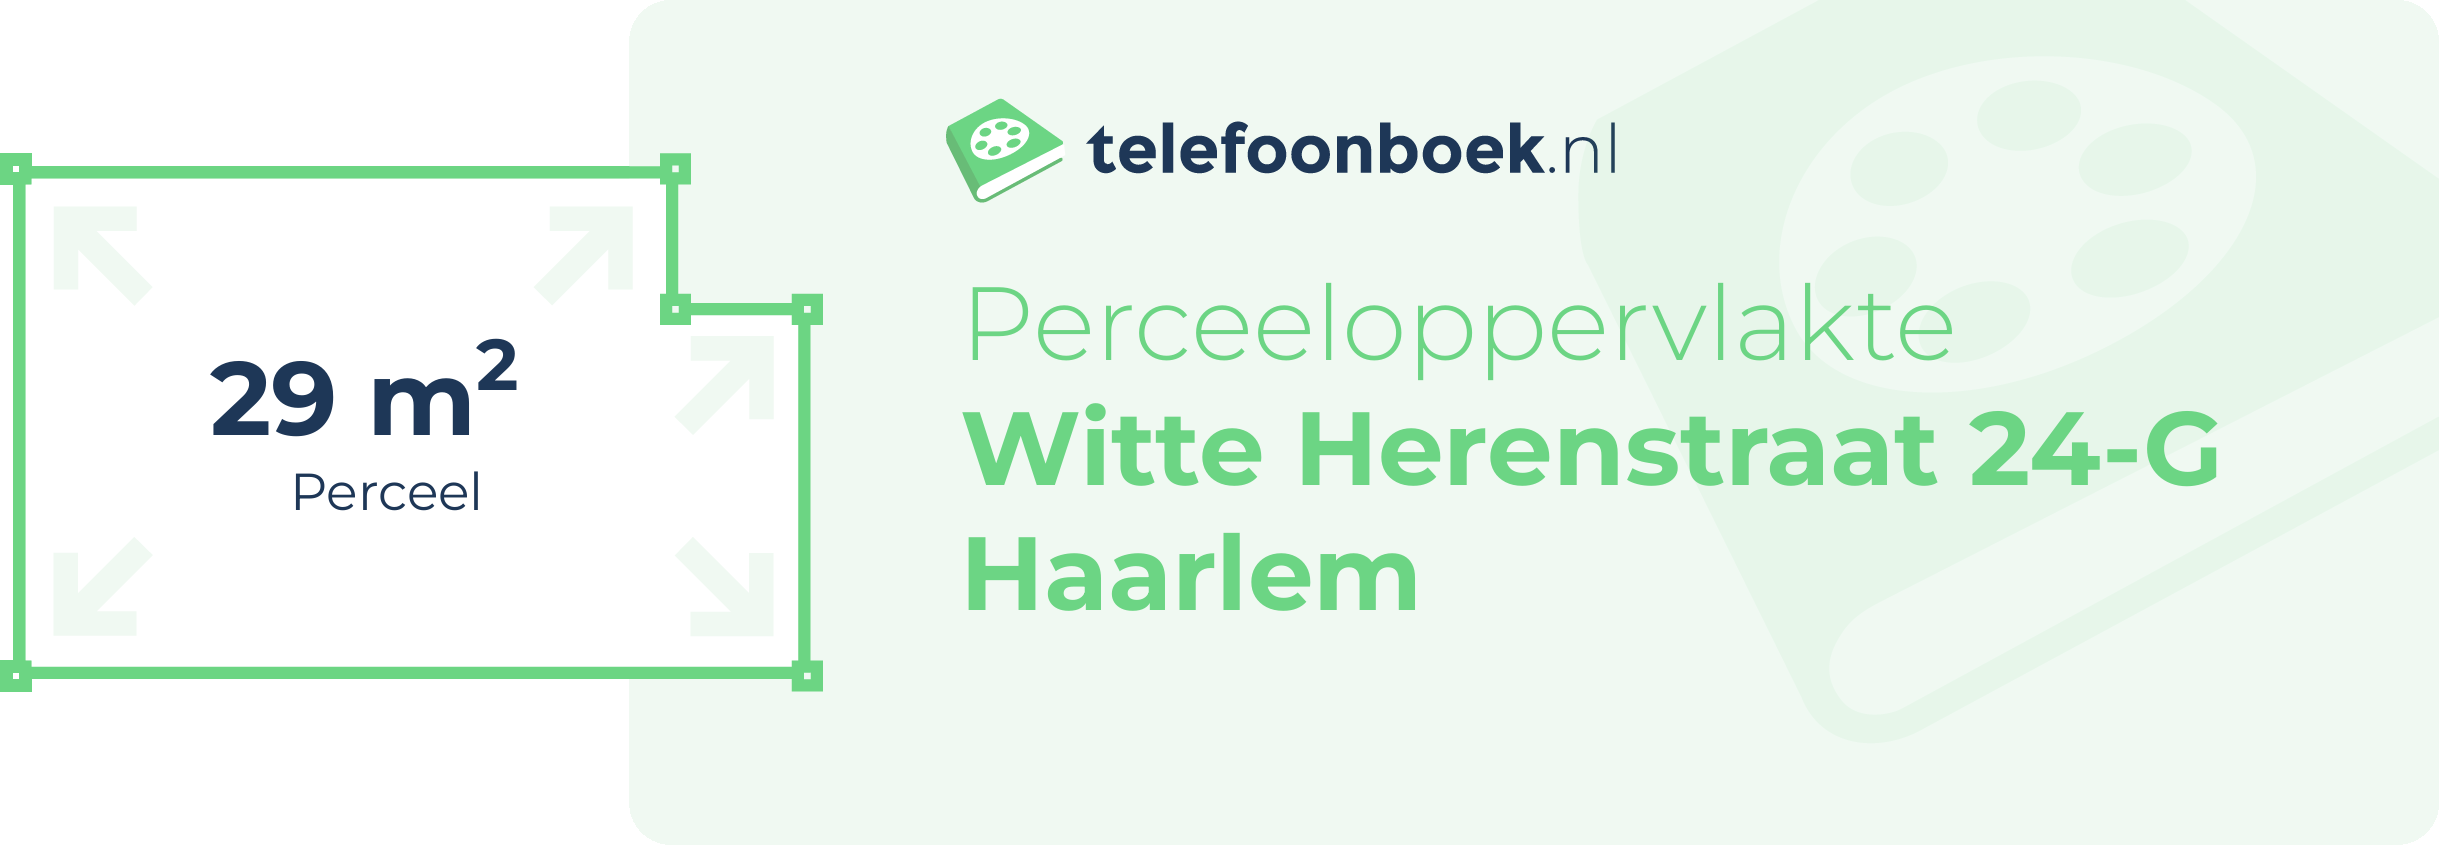 Perceeloppervlakte Witte Herenstraat 24-G Haarlem